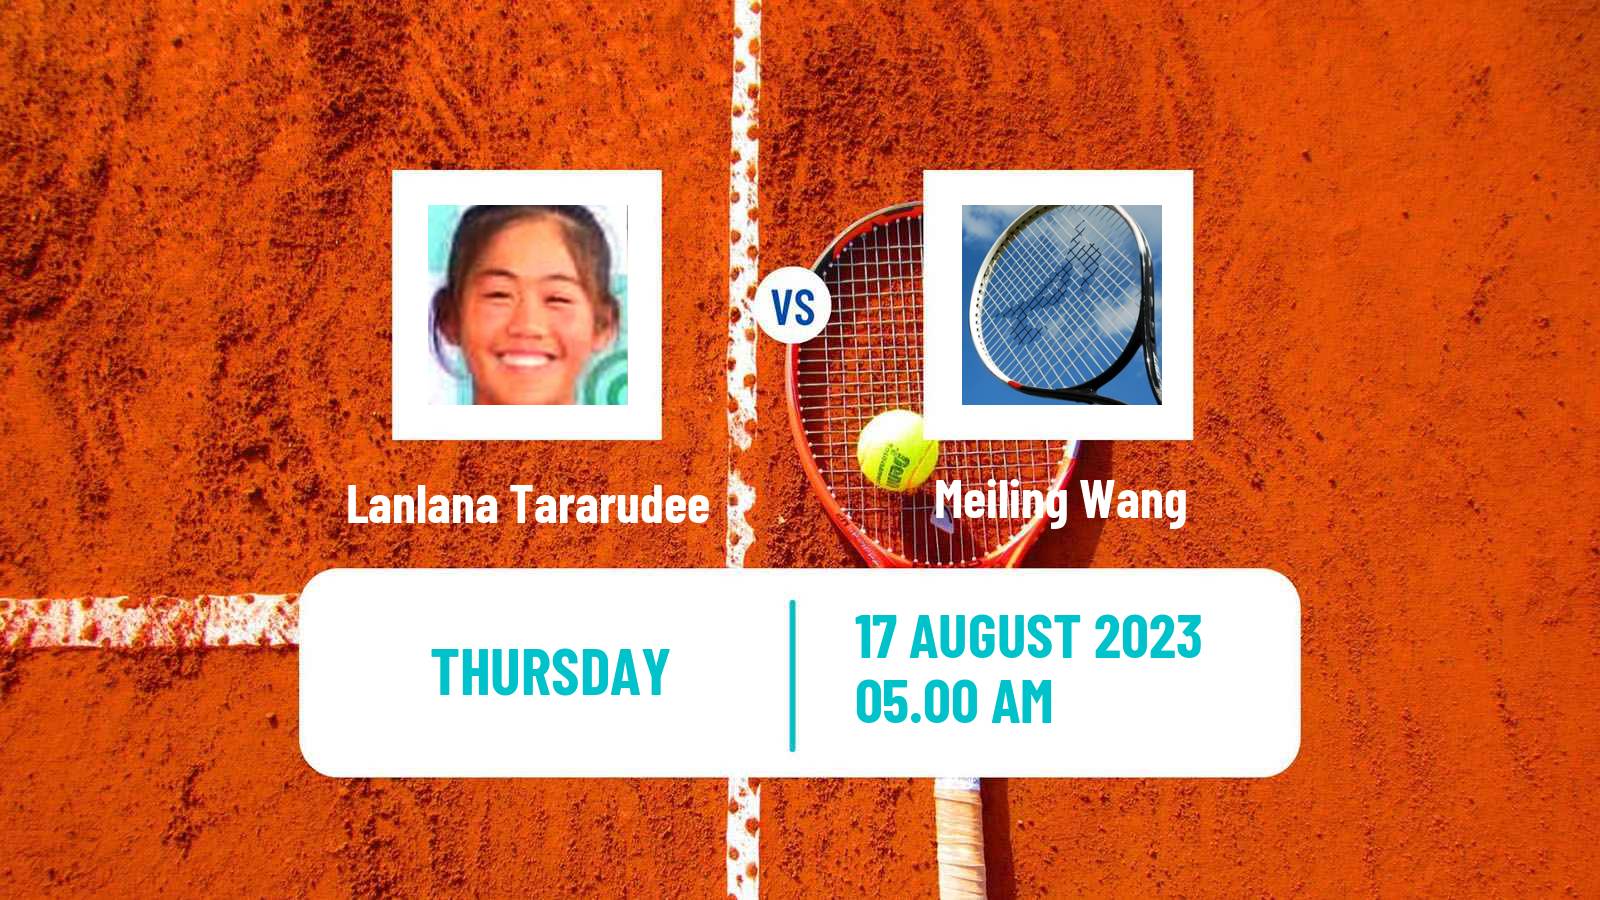 Tennis ITF W40 Nanchang Women Lanlana Tararudee - Meiling Wang